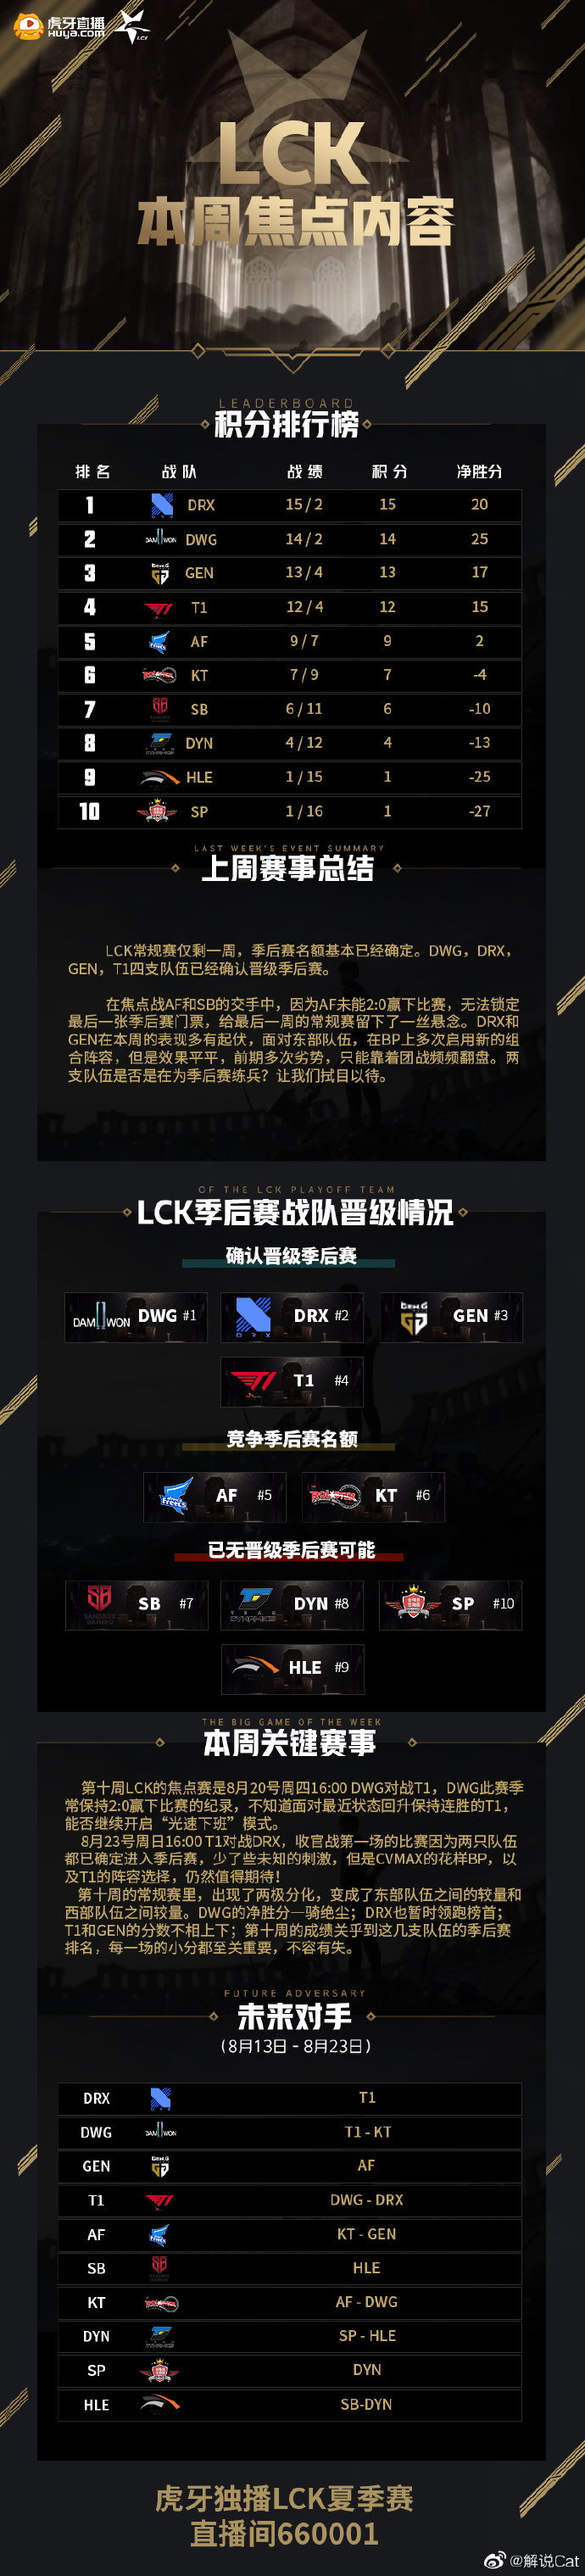 LCK本周焦点内容：T1面临劲敌，KT保留进入季后赛的机会